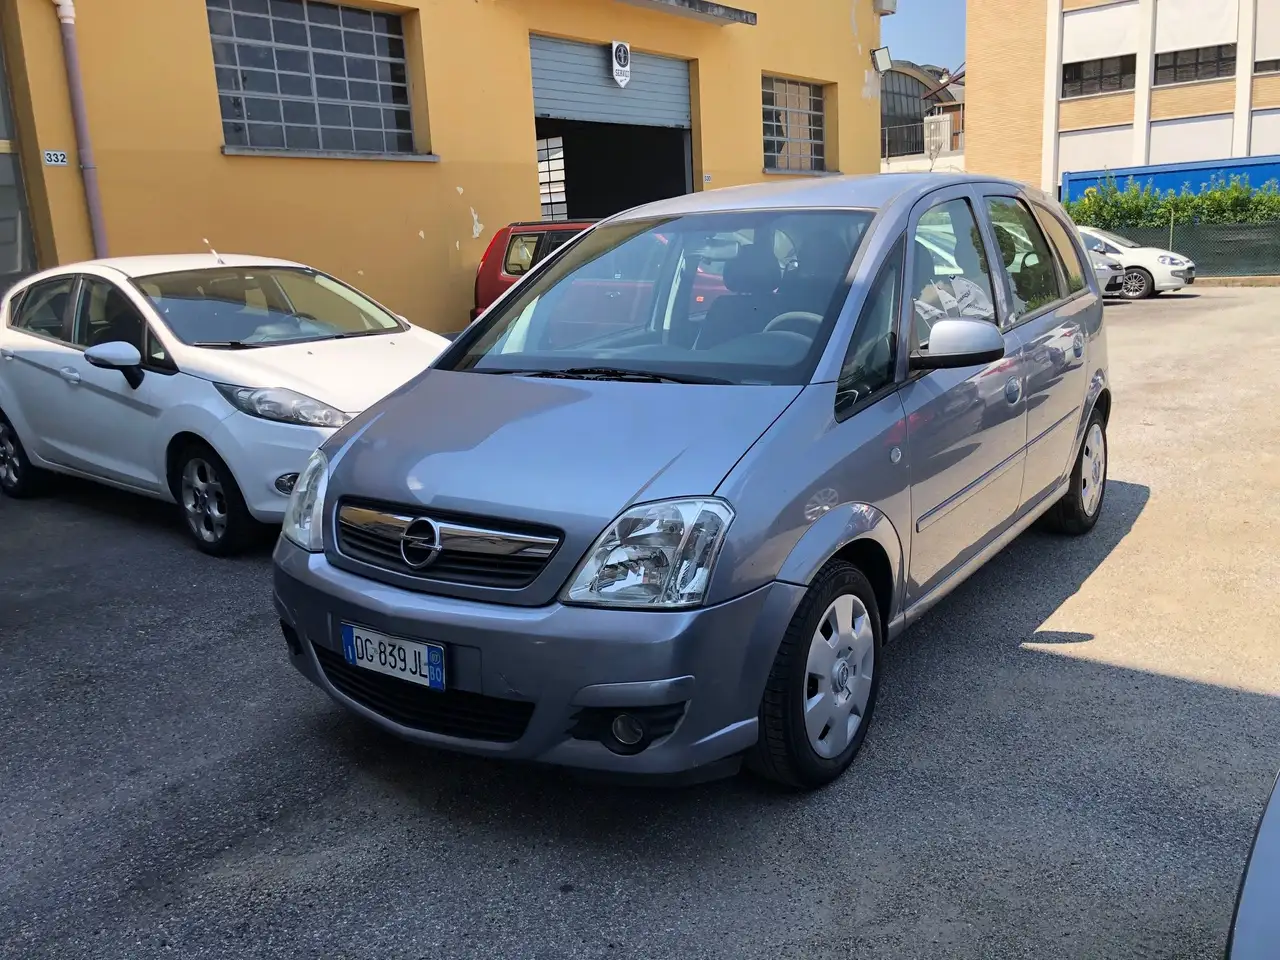 usato Opel Meriva Monovolume a Ozzano dell'Emilia - Bologna - Bo per €  3.500,-